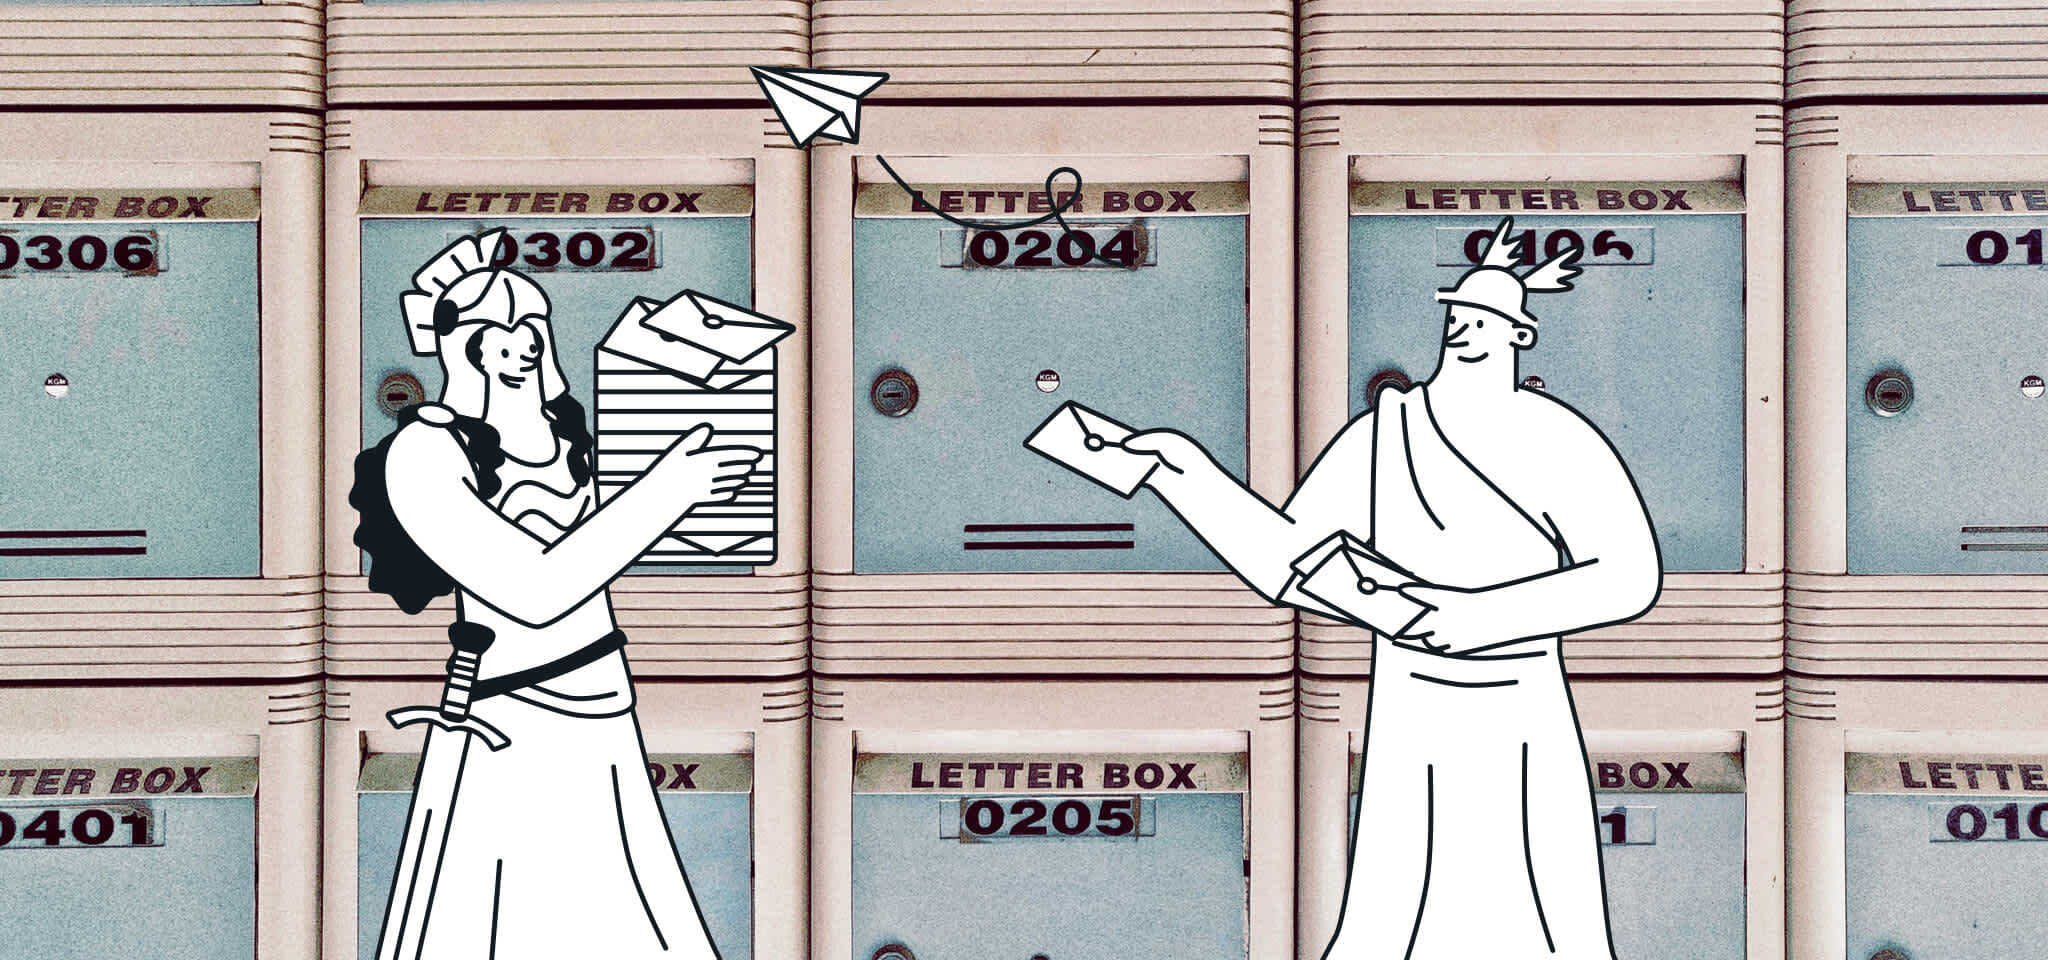 Hermes und eine Göttin liefern einige Sendungen in Briefkästen